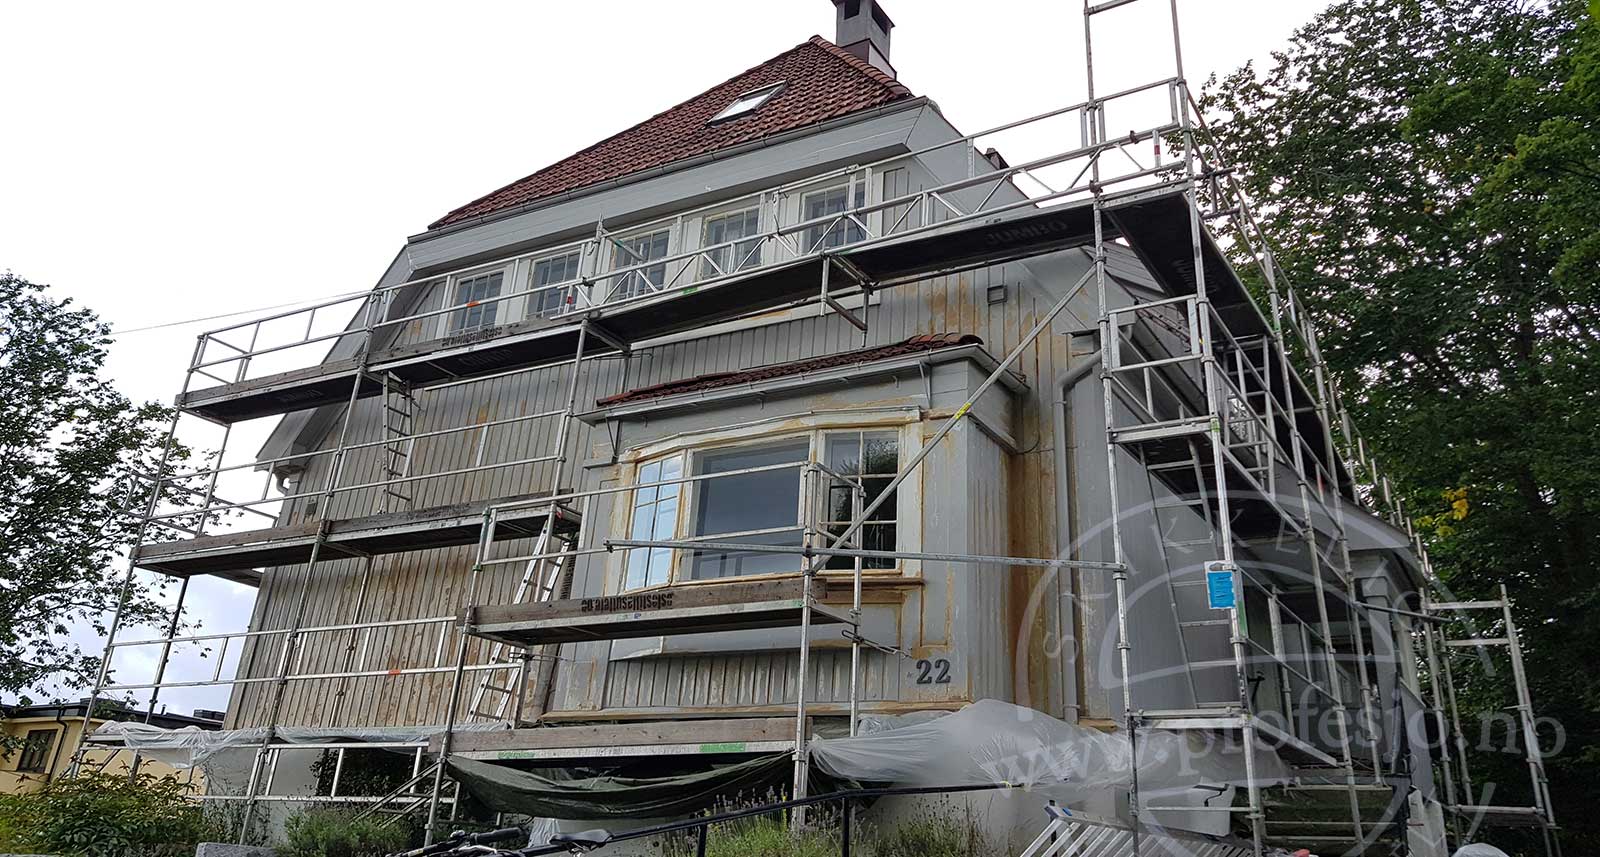 lys grå farge på det malte huset, forbered godt før maling